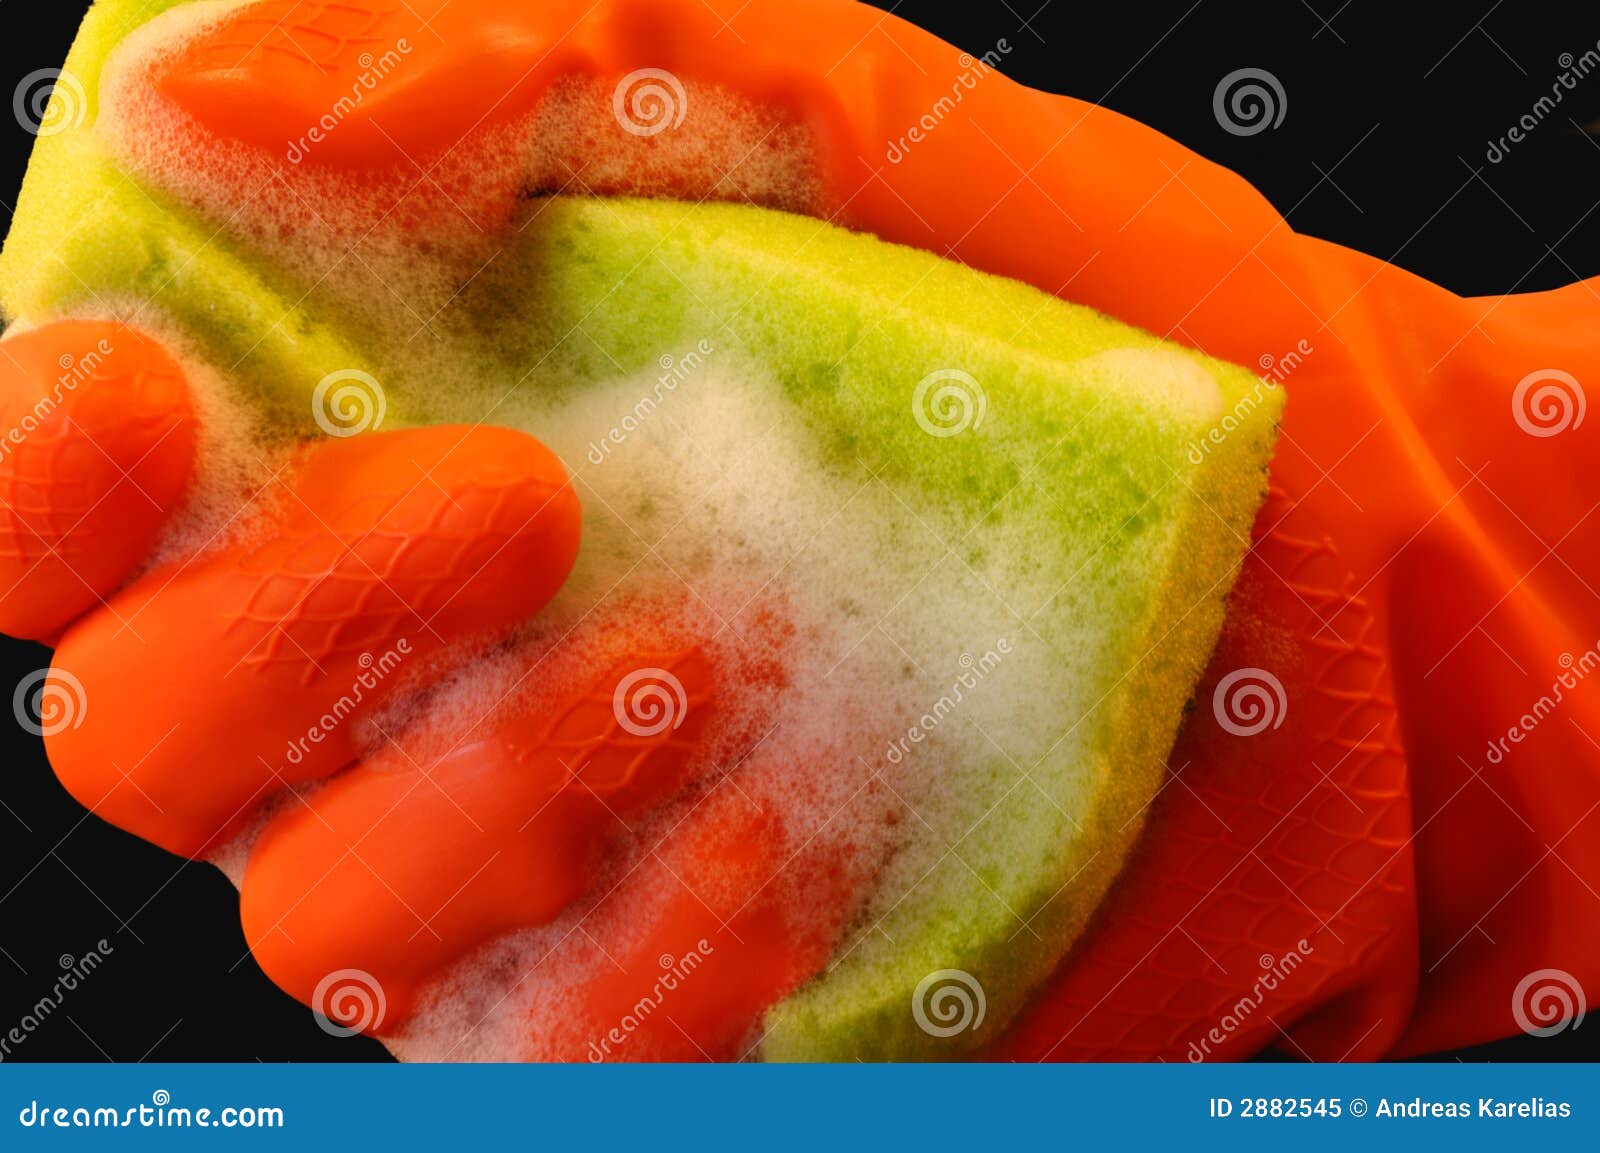 Cleaningström. Handskehand - rymd orange skyddande soapy svamp